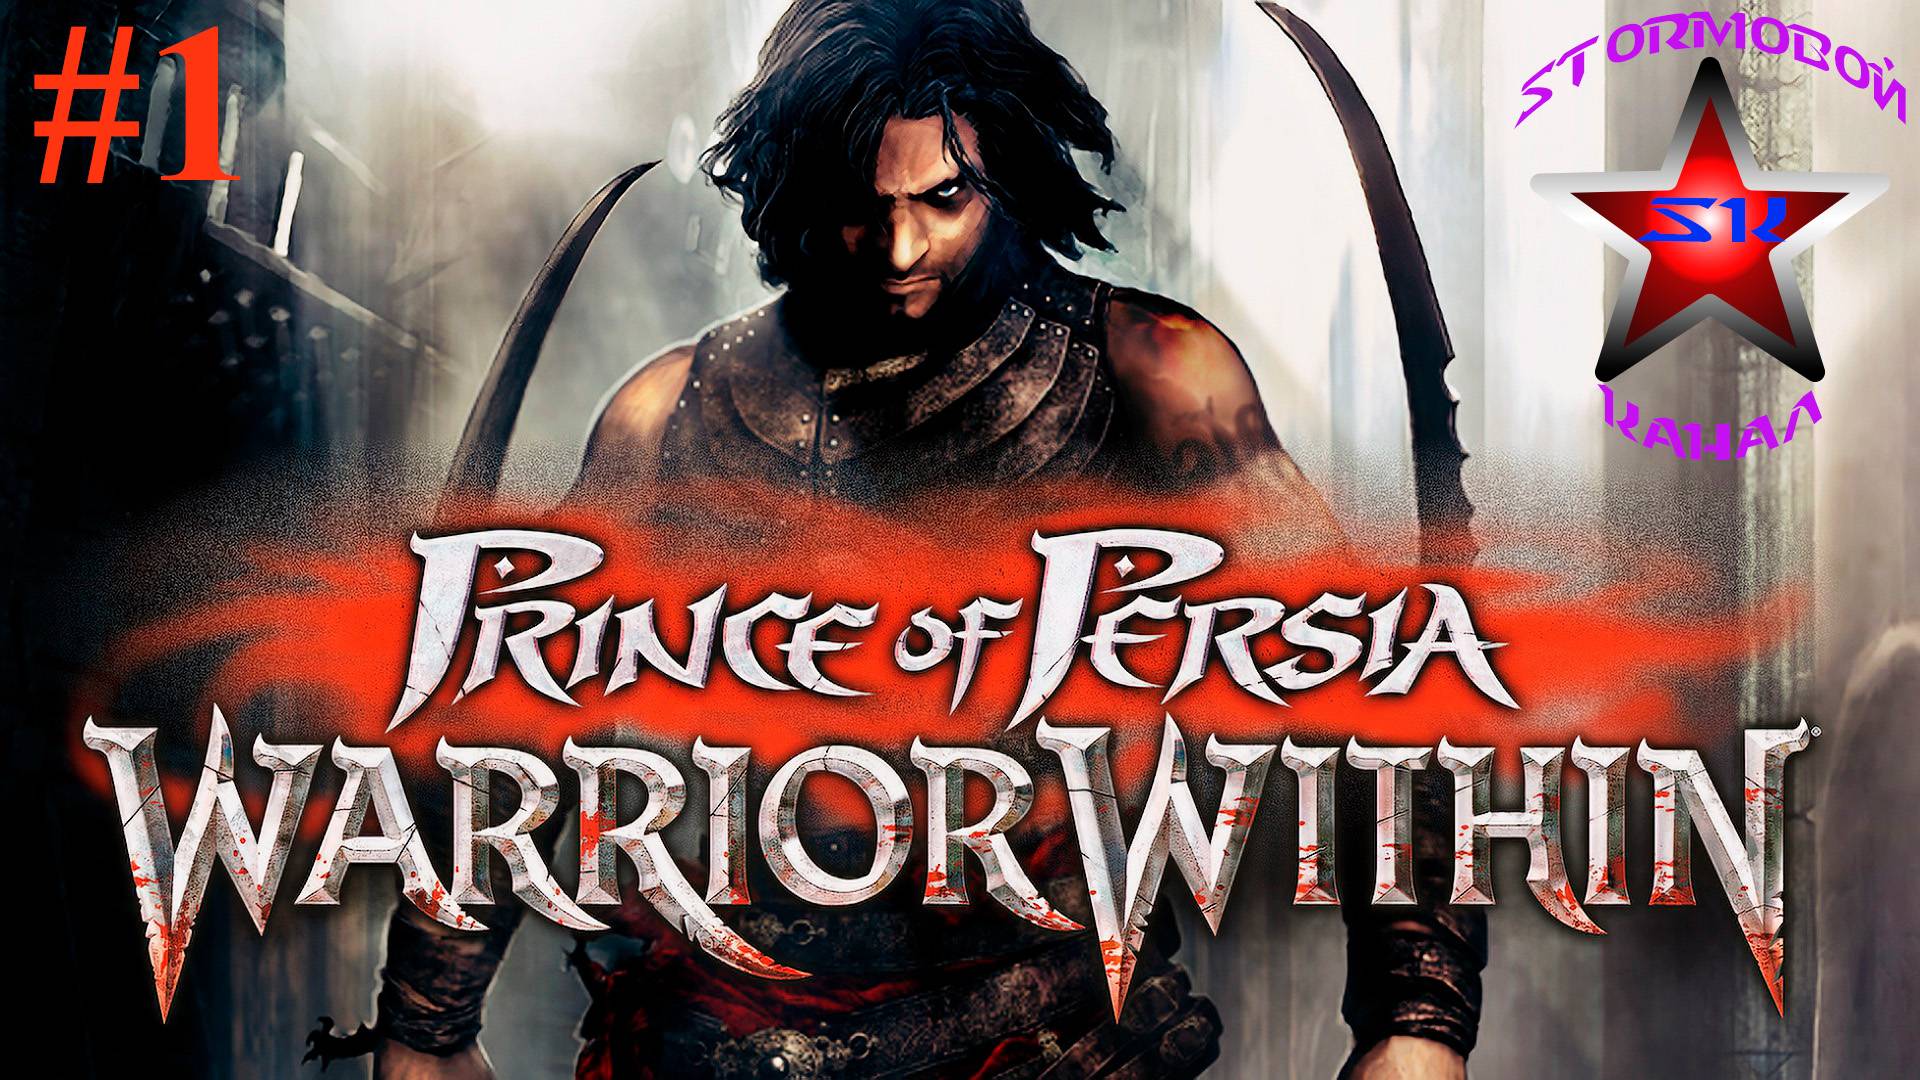 "ВСПОМИНАЯ КЛАССИКУ" Prince of Persia Warrior Within Прохождение на РусскомЧасть#1|Walkthrough|Стрим